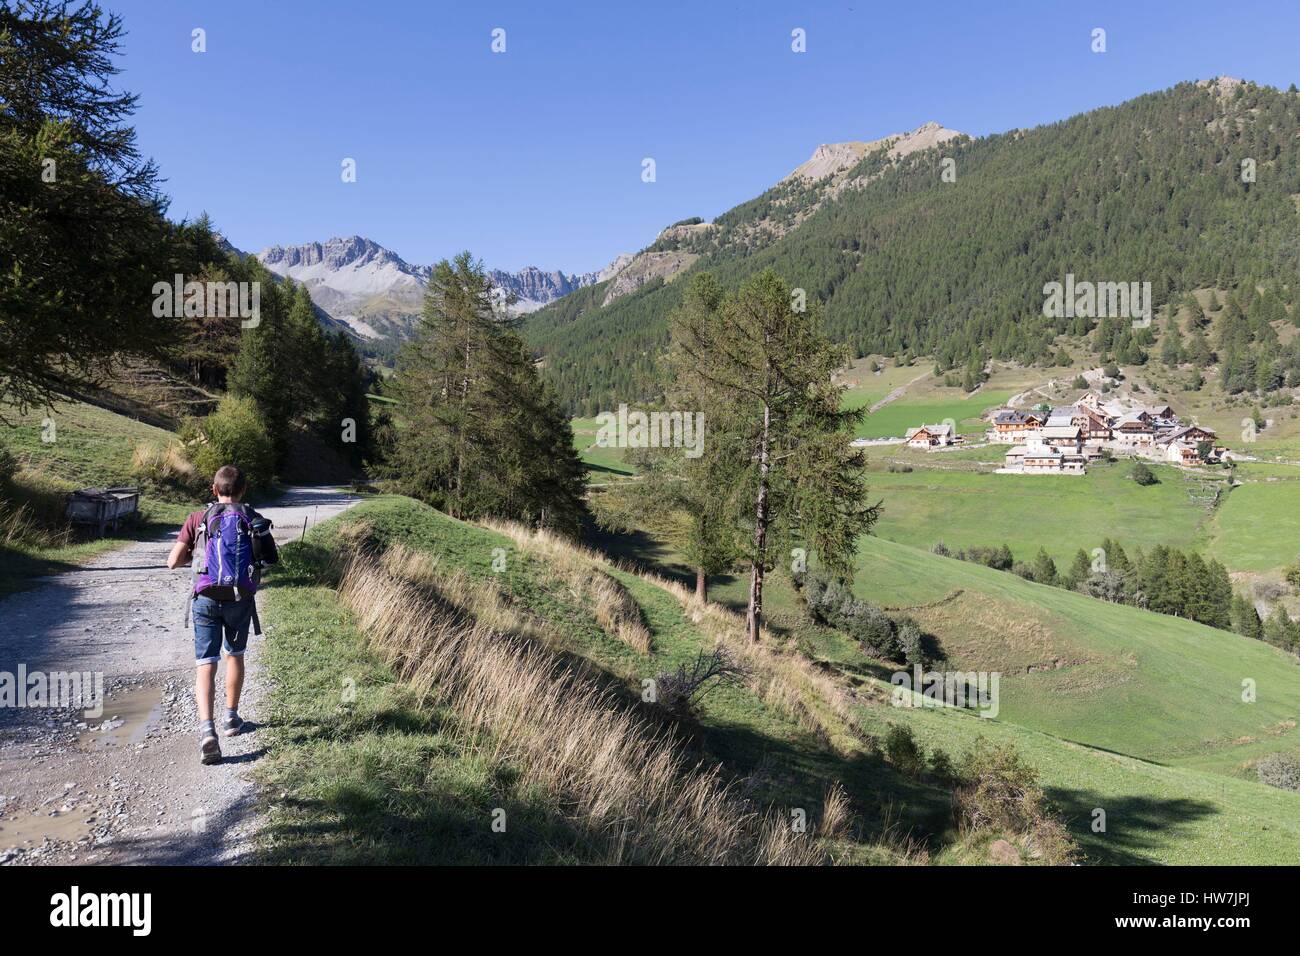 France, Hautes Alpes, Parc Naturel Régional du Queyras (Parc Naturel Régional du Queyras), le hameau de souliers (1820m), la randonnée sur le chemin du lac de Roue Banque D'Images